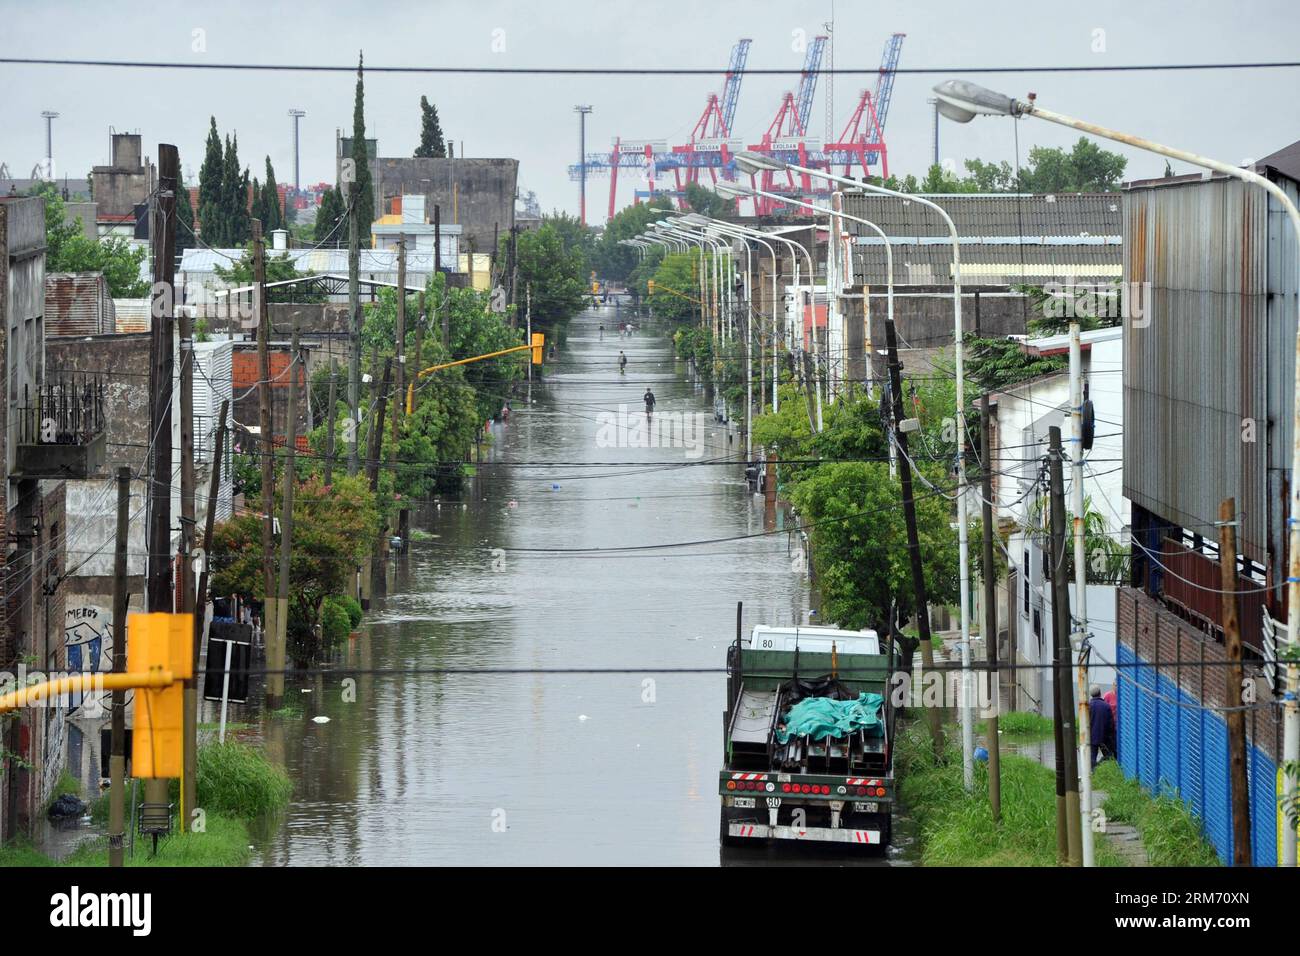 Una strada allagata si vede a Buenos Aires, capitale dell'Argentina, il 7 febbraio 2014. Le calamità di venerdì mattina a Buenos Aires hanno inondato le aree dei comuni di la Plata ed Ensenada e causato l'evacuazione di persone nella cittadina di Berisso, secondo la stampa locale. (Xinhua/Leonardo Zavattaro/TELAM) (rt) ARGENTINA-BUENOS AIRES-AMBIENTE-CLIMA PUBLICATIONxNOTxINxCHN una via allagata È Laghi a Buenos Aires capitale della città Argentina IL 7 febbraio 2014 da venerdì mattina a Buenos Aires hanno inondato le aree dei comuni di la Plata e Ensenada e CAUSATO L'evacuazione Foto Stock